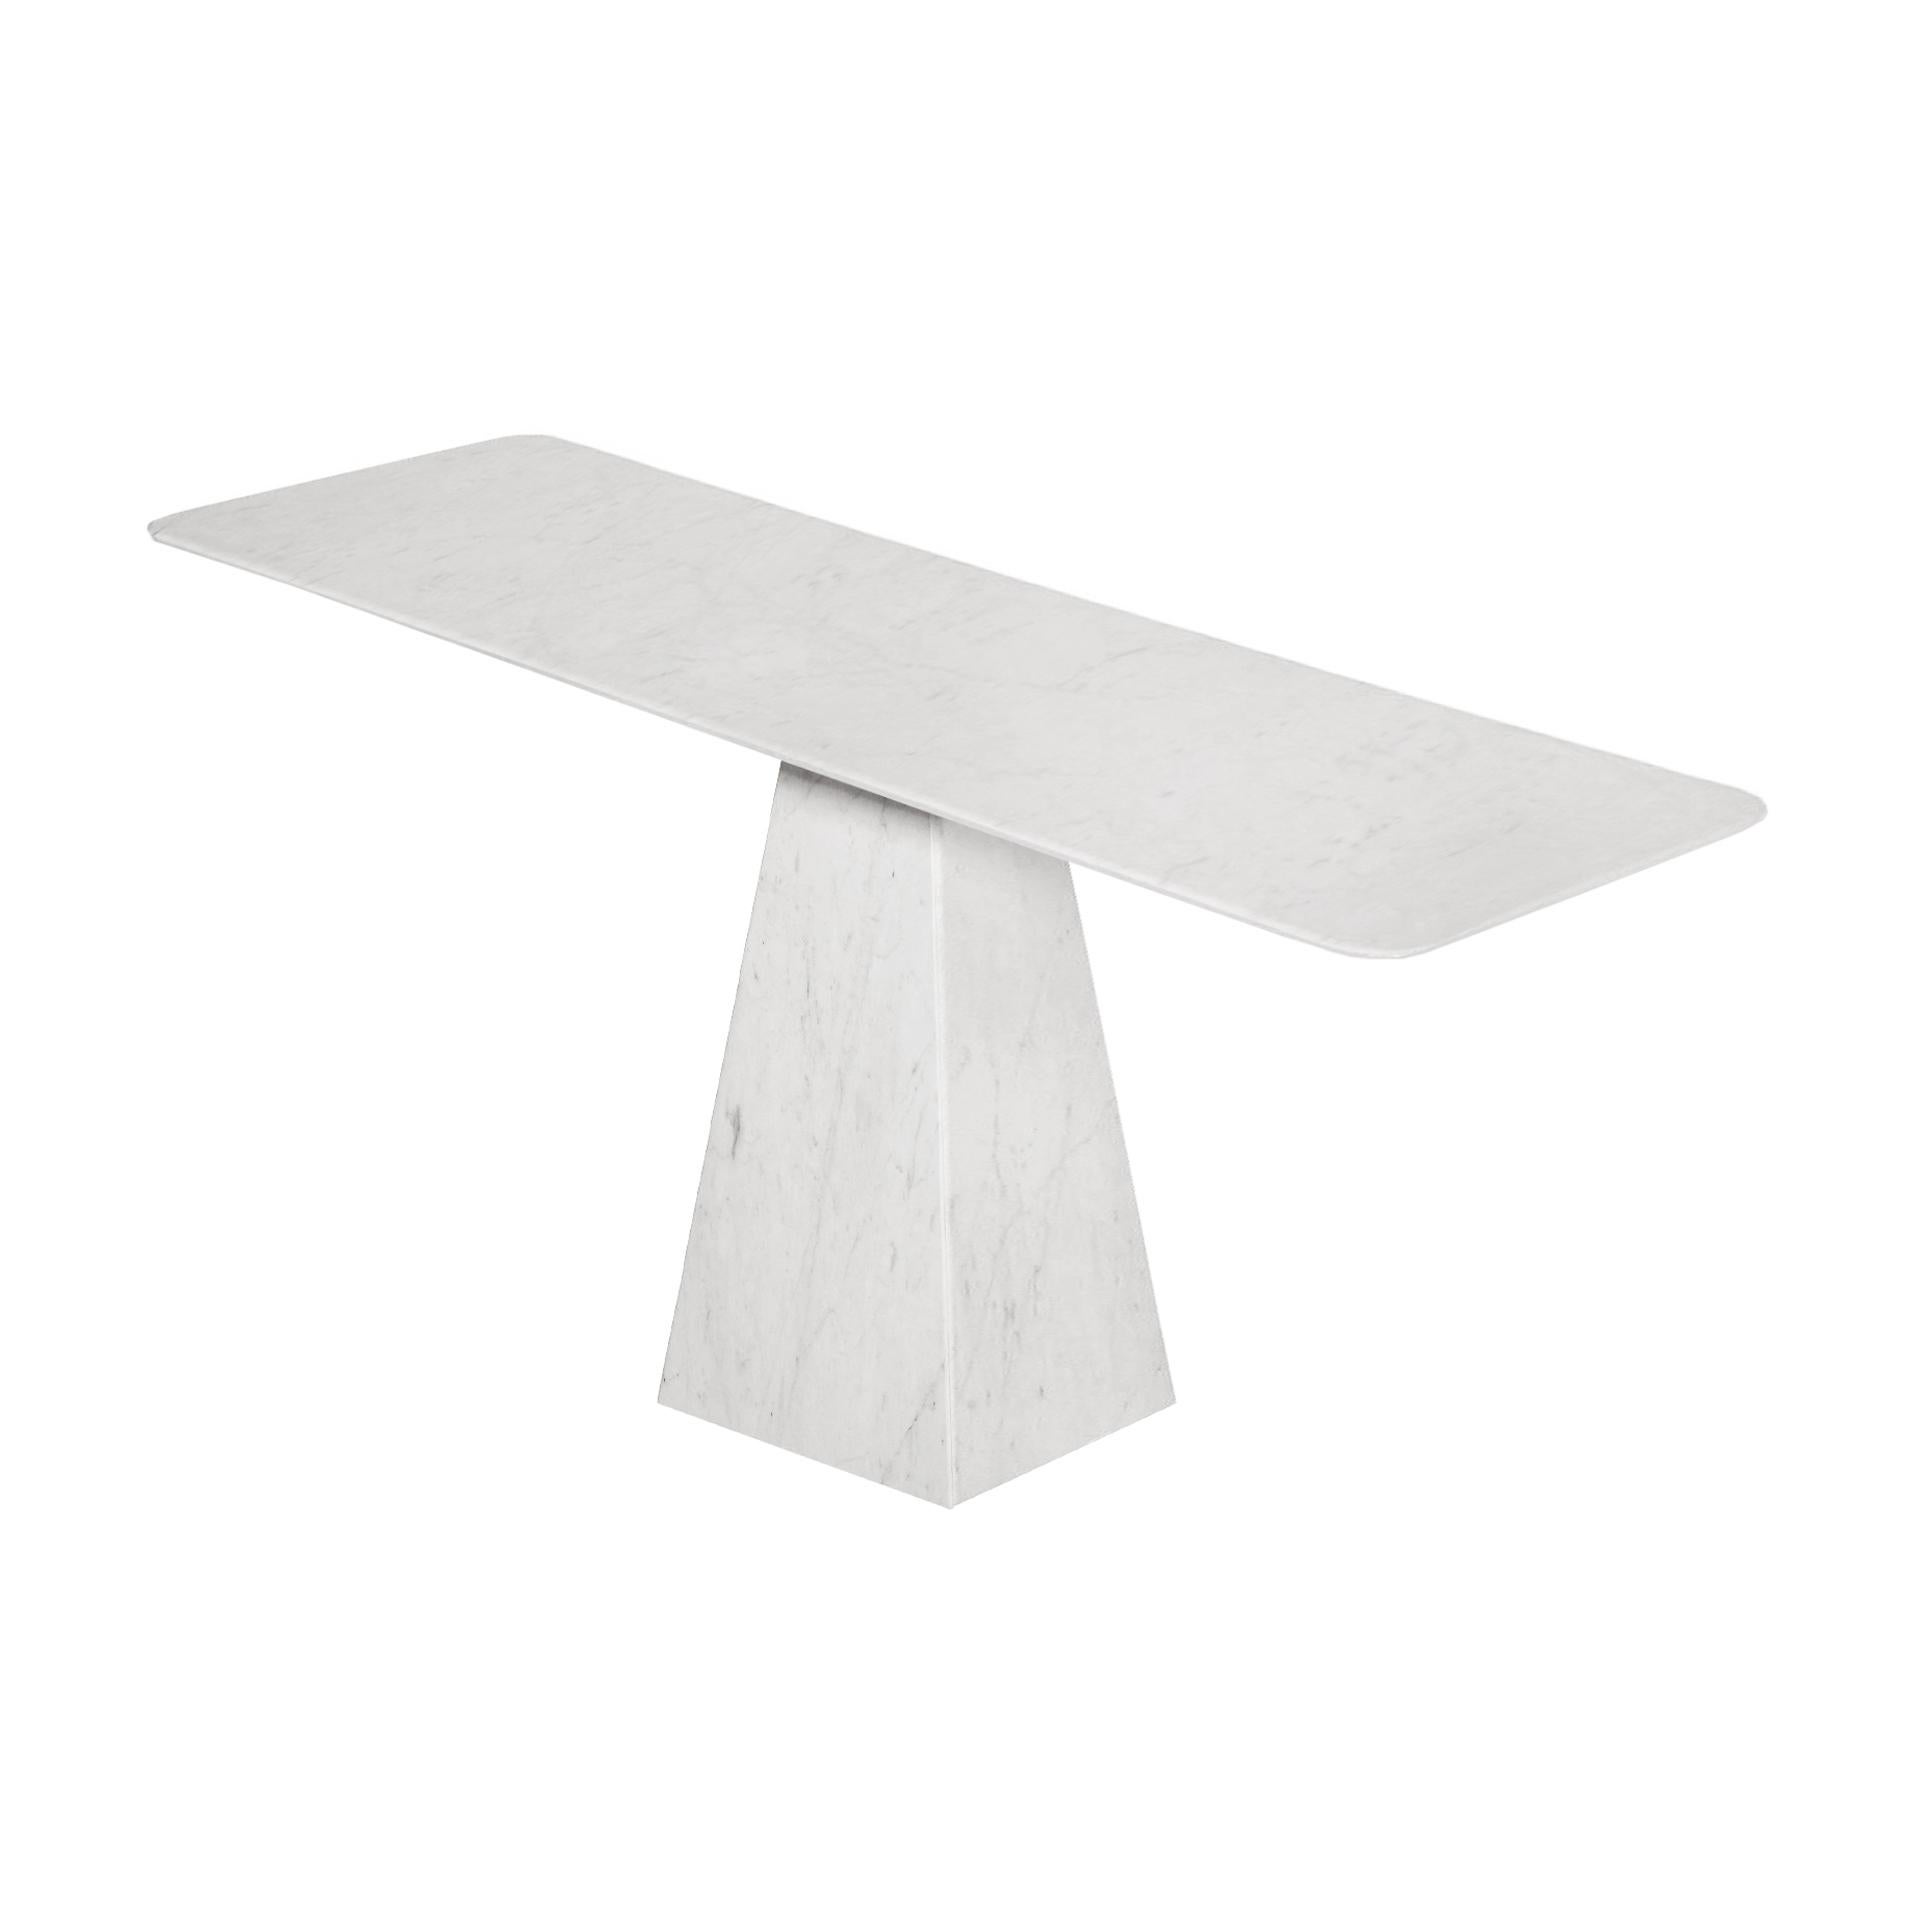 thin white table